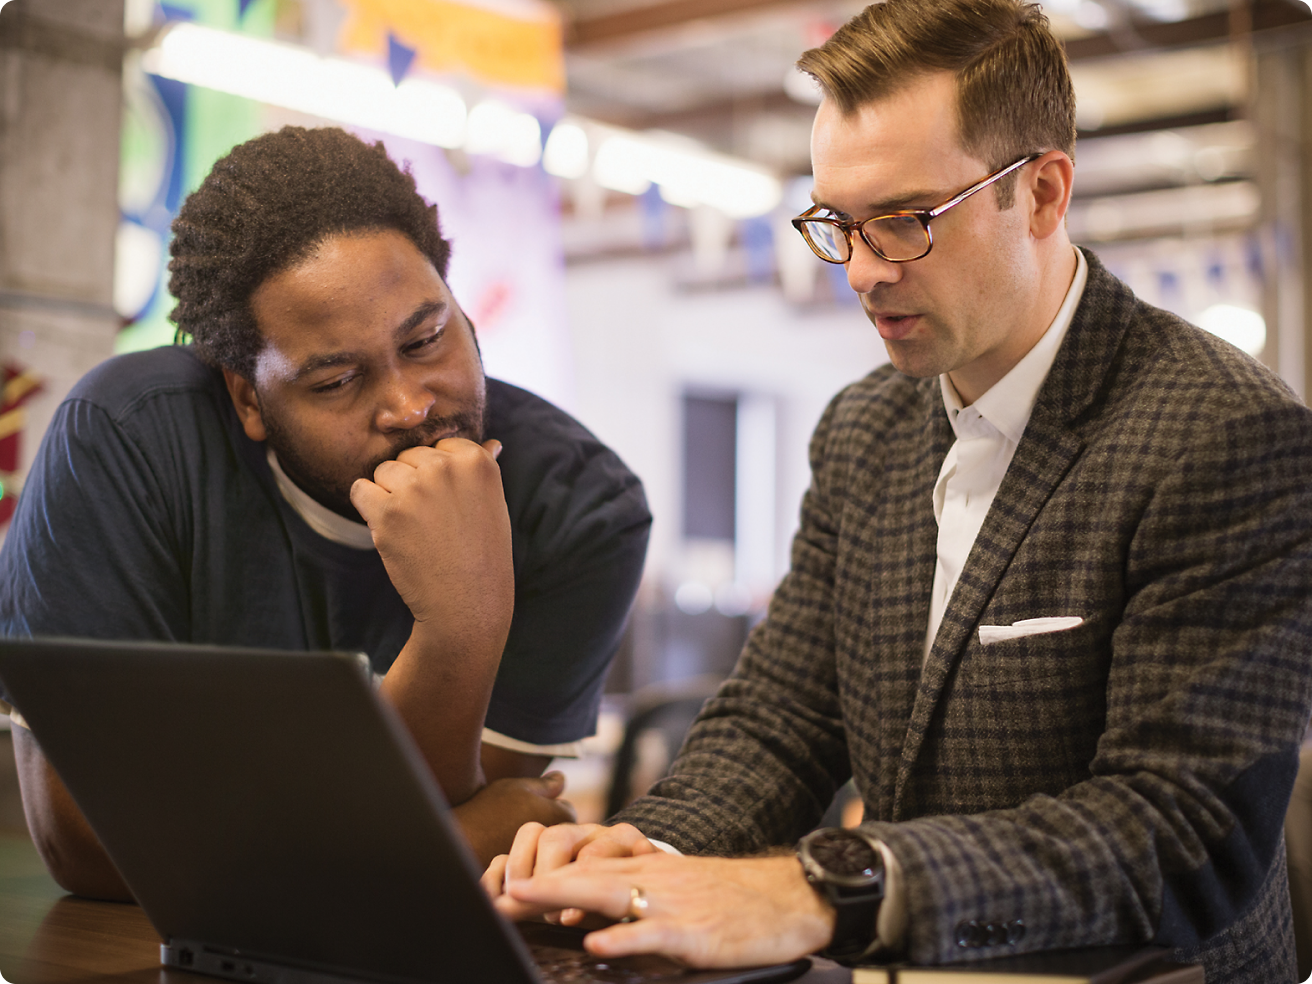 Dois homens, um usando óculos, revisam conteúdo em um laptop juntos em um ambiente de escritório.